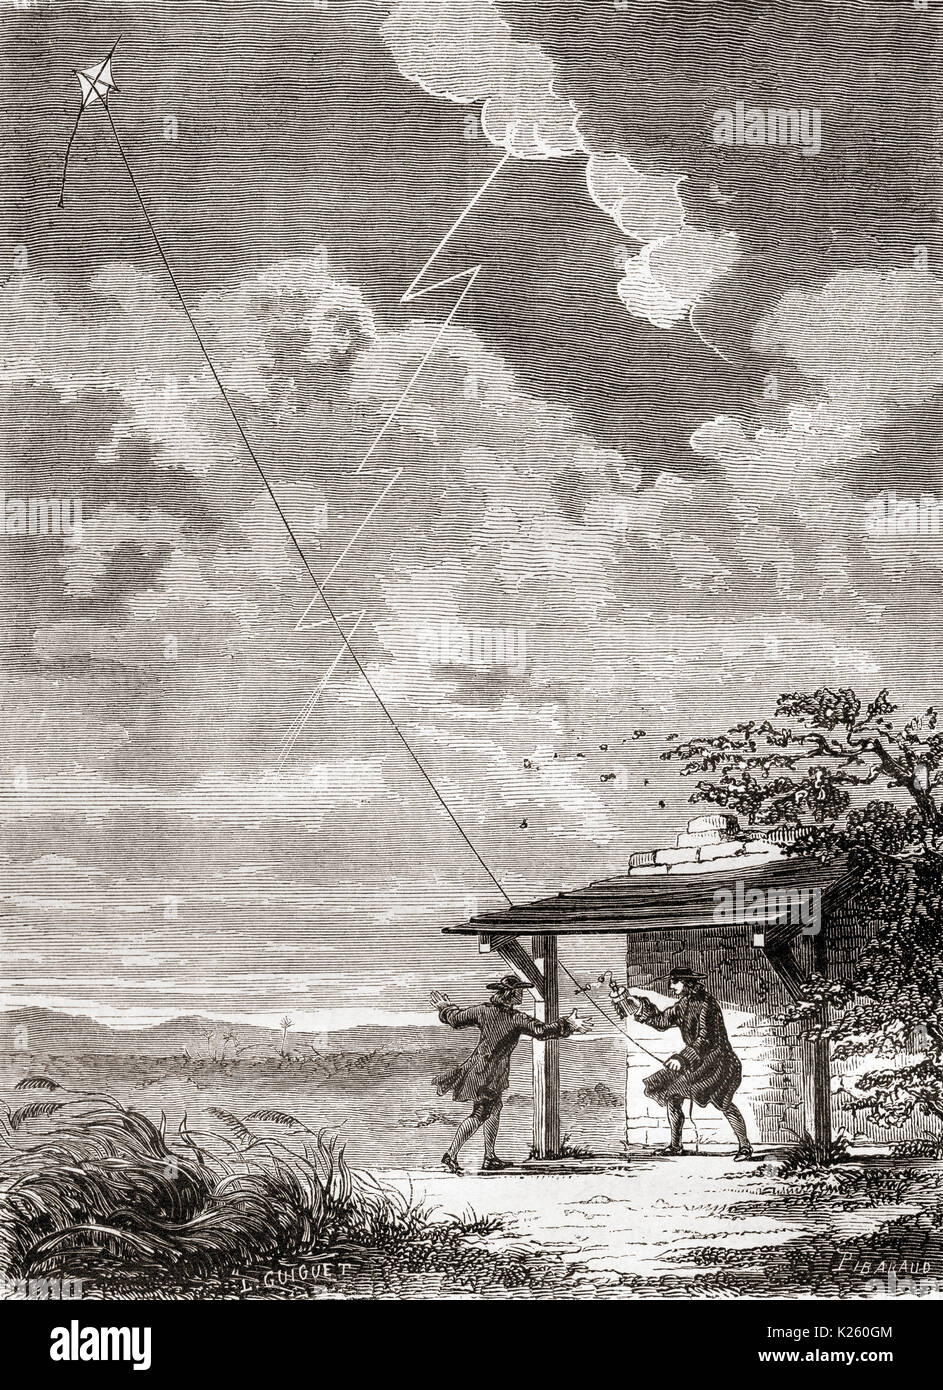 Benjamin Franklin (1706-1790) und sein Sohn William, ihre berühmte Experiment am 15. Juni 1752, Flying a Kite in einem Gewitter. Ein metall draht auf dem Kite zog ein Blitzschlag und Strom nach unten, um die Zeichenfolge in ein Floß, das Aufladen eines Leyden jar (Kondensator) in der Nähe von Franklin's Hand gesehen. Dieses Experiment bewiesen, dass der Blitz ein elektrisches Phänomen war, und unterstützte Franklin's Erfindung von Blitzableitern. Von Les merveilles de la Science, veröffentlicht 1870. Stockfoto